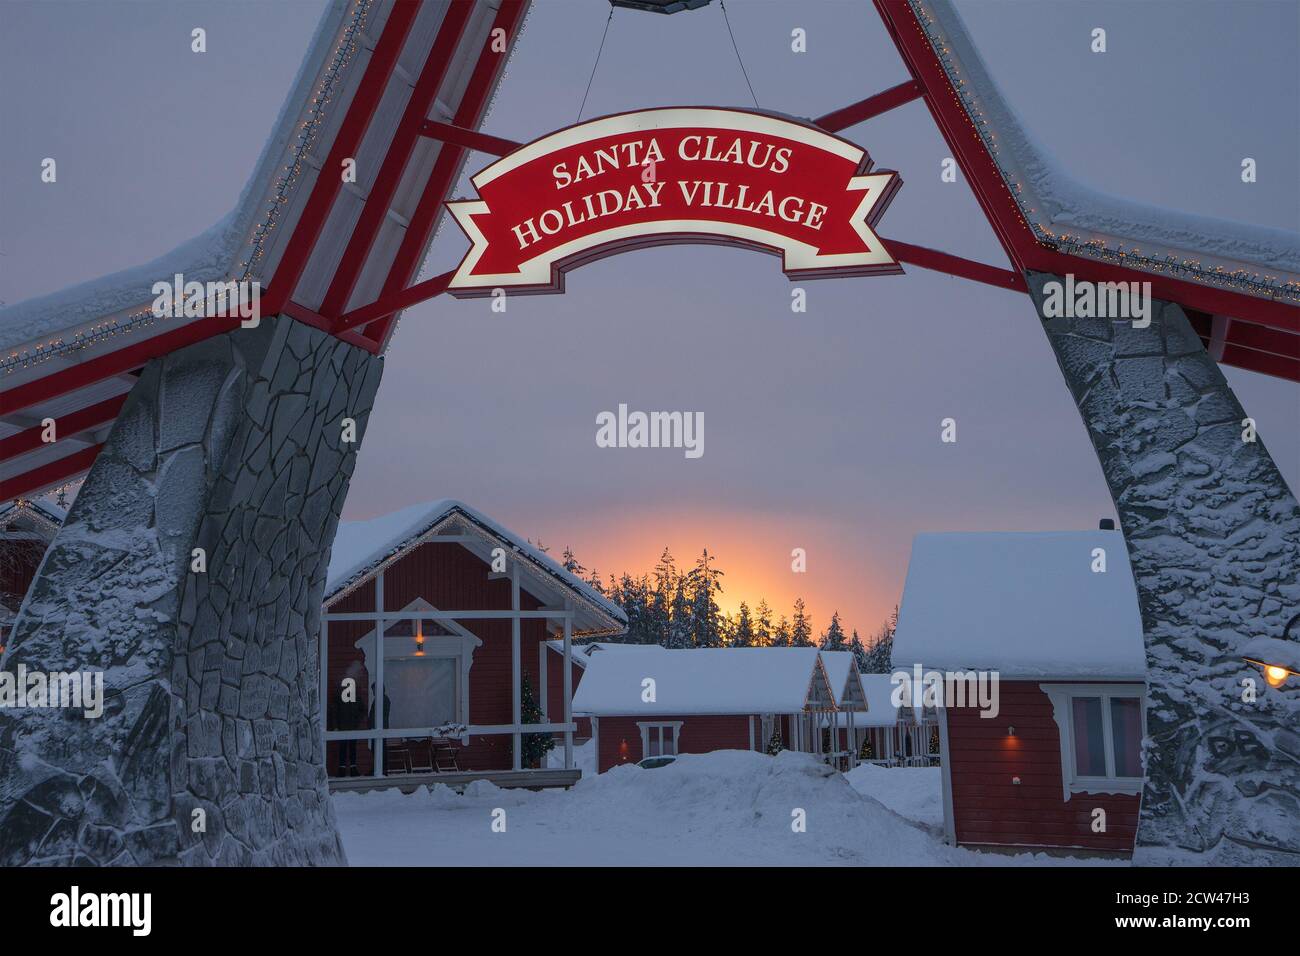 Hotel Santa Claus Holiday Village, Polarkreis, Lappland, Finnland. Leuchtendes Pink bei Sonnenuntergang. Illustratives Editorial. Platz für Text kopieren. Stockfoto